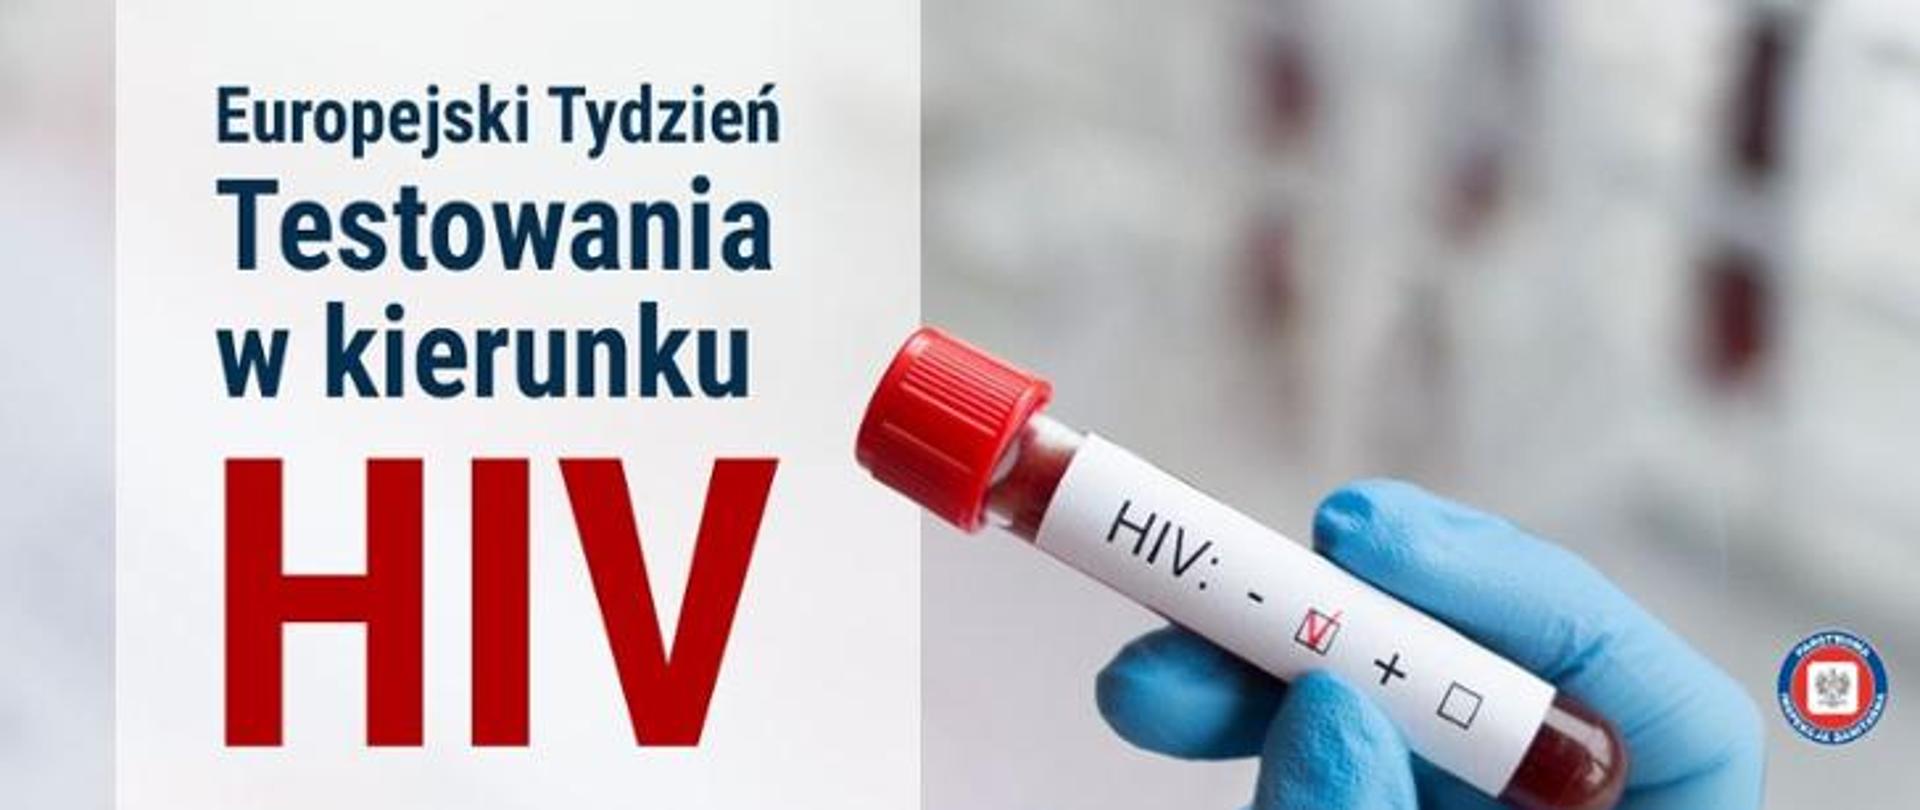 Po lewej na jasnoszarym tle ciemny napis Europejski Tydzień Testowania w kierunku HIV, po prawej dłoń w lateksowej rękawiczce trzymająca fiolkę z pobraną krwią do badania w kierunku HIV, w prawym dolnym rogu logo Państwowej Inspekcji Sanitarnej.